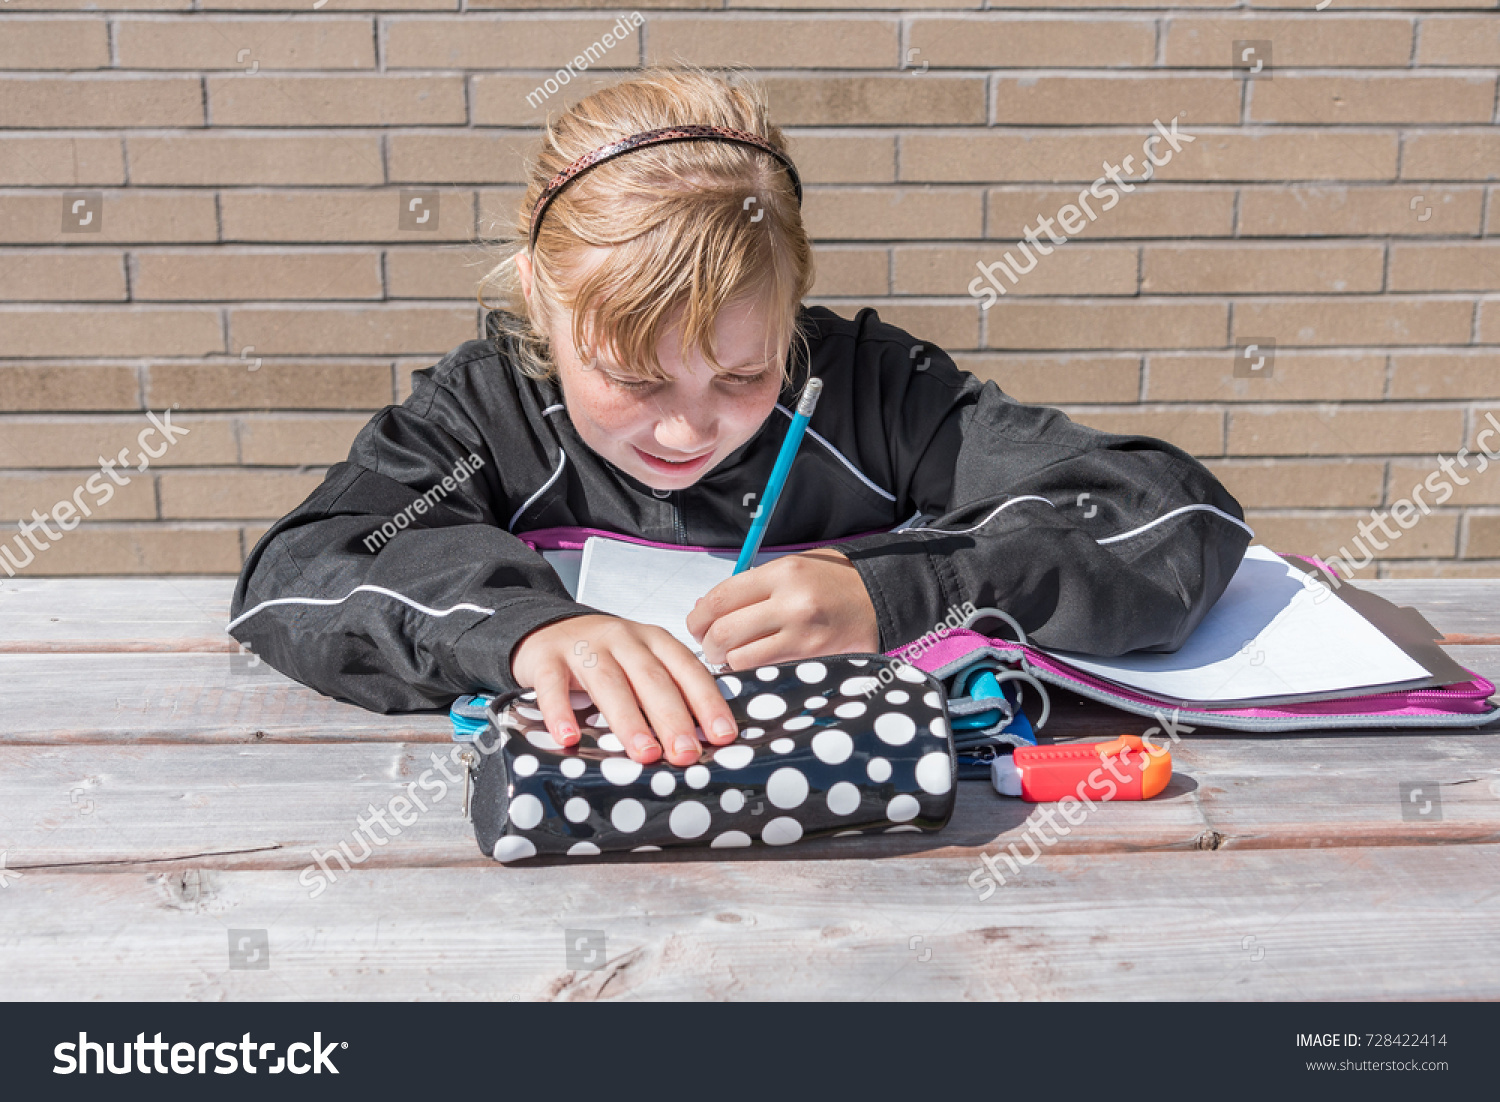 doing homework outside reddit